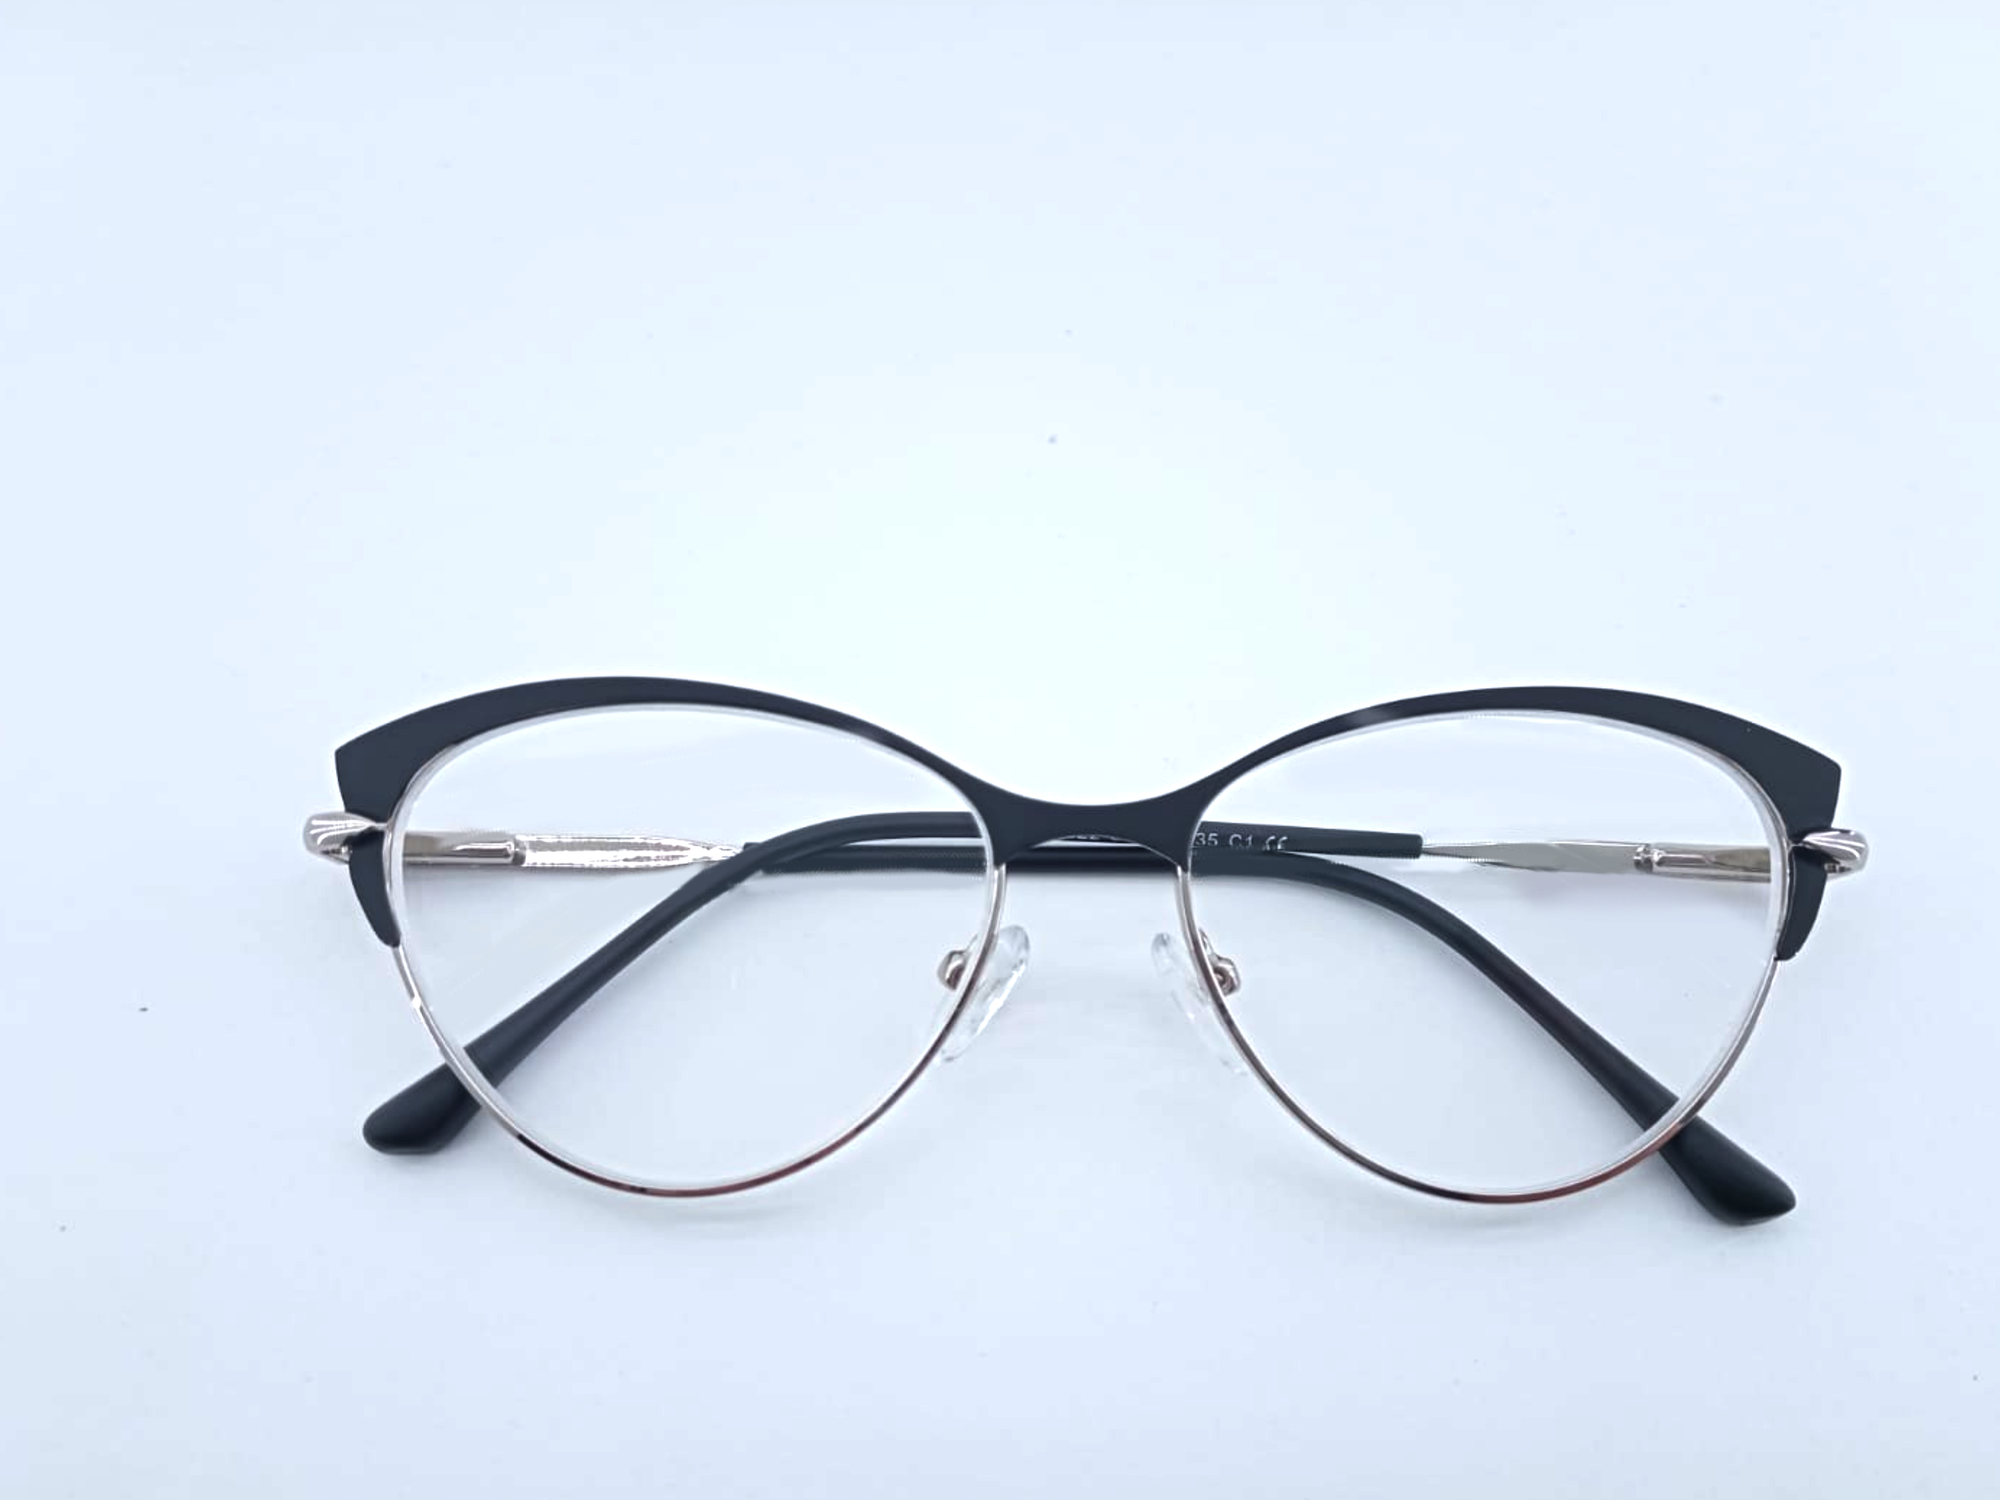 Готовые очки для зрения с межцентровым расстоянием 58-60 мм и диоптриями +3.0